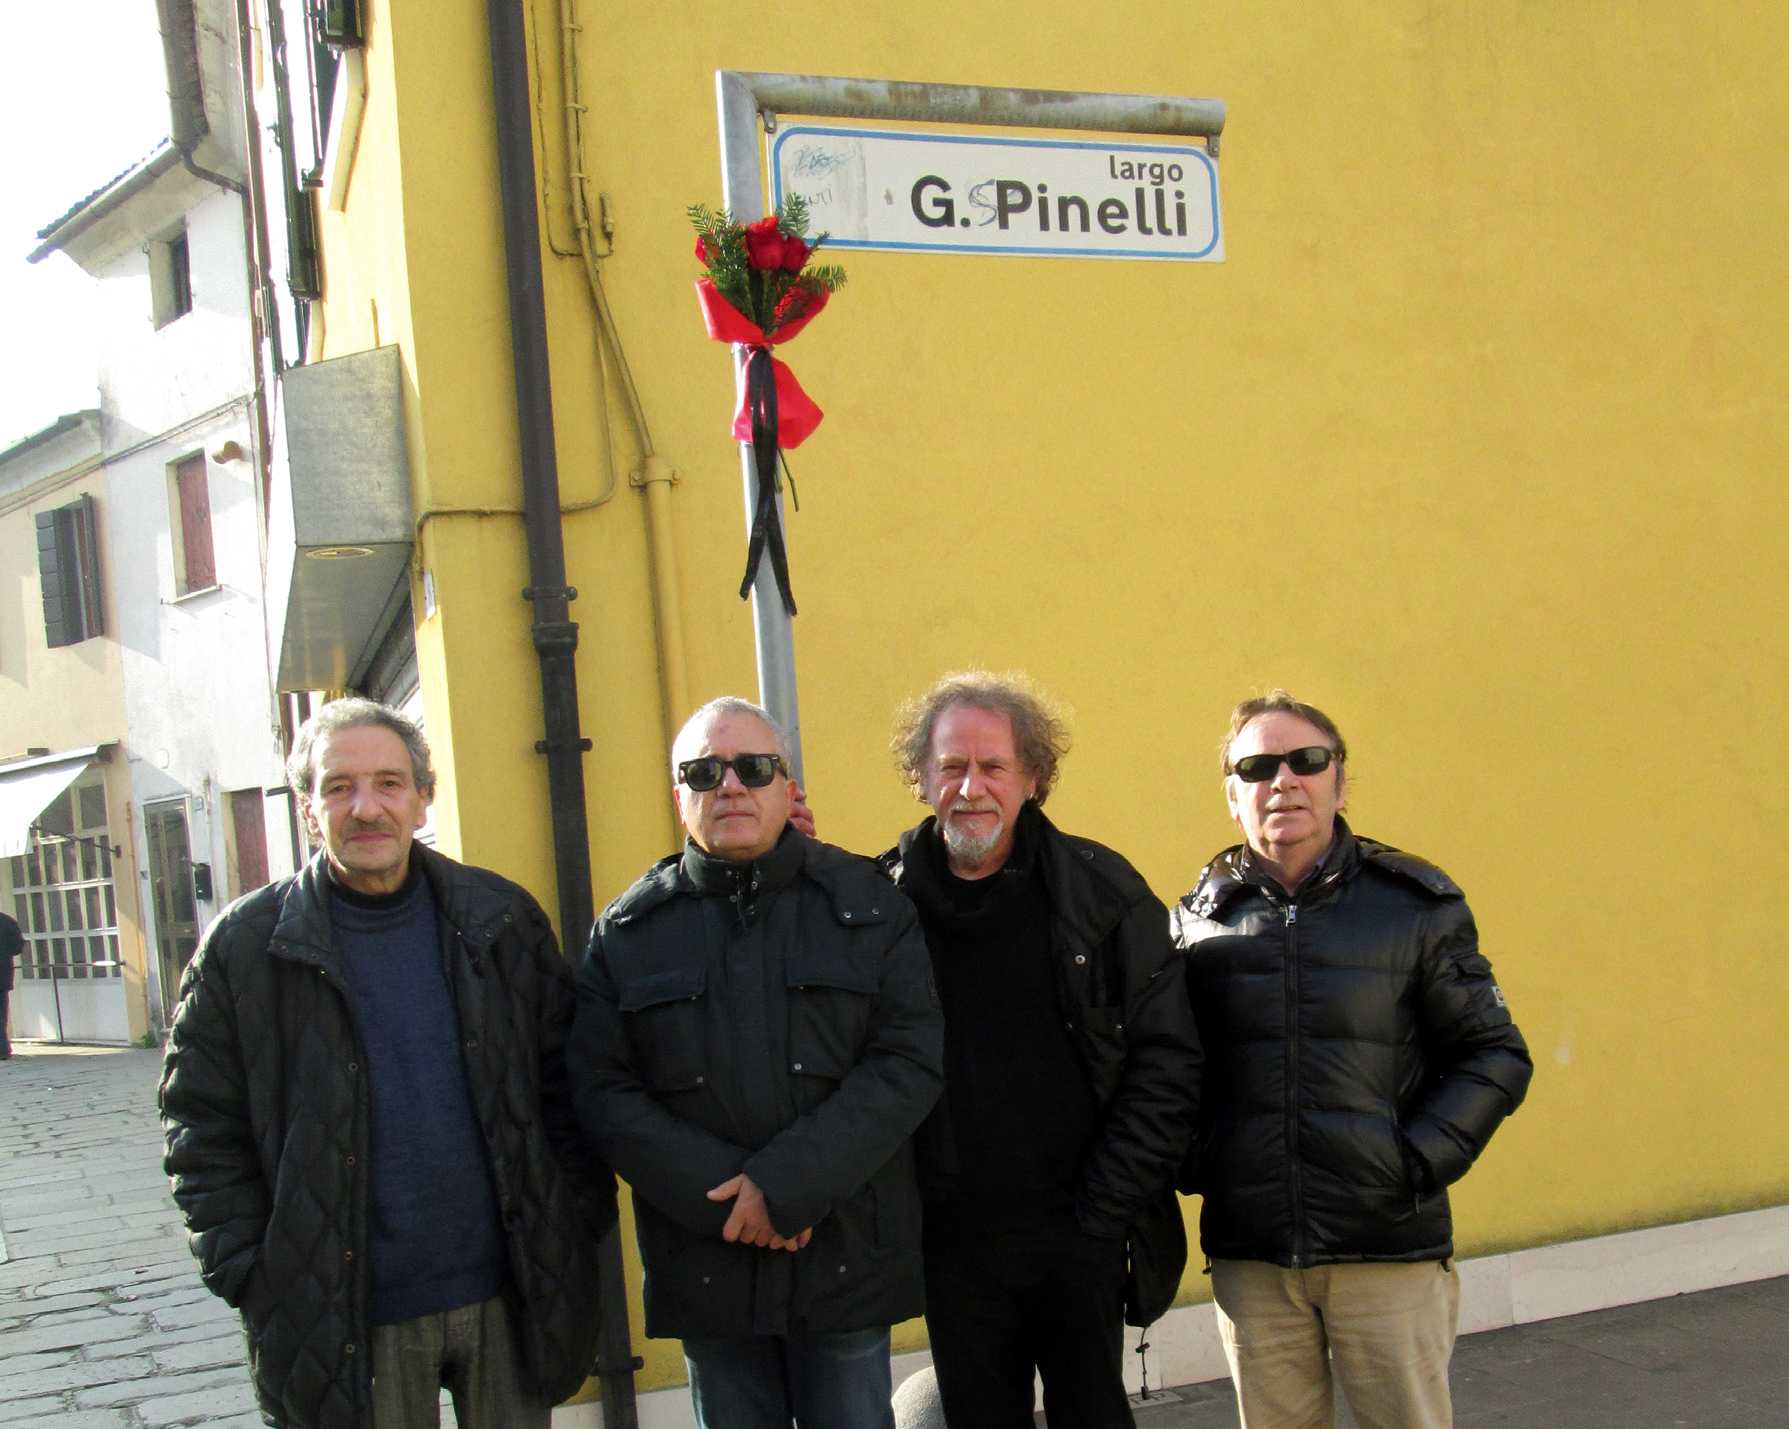 Membres del gru anarquista de Dolo (2016). D'esquerra a dreta: Levis Livieri, Fiorenzo Urso, Gigi Artusi i Tino Maso